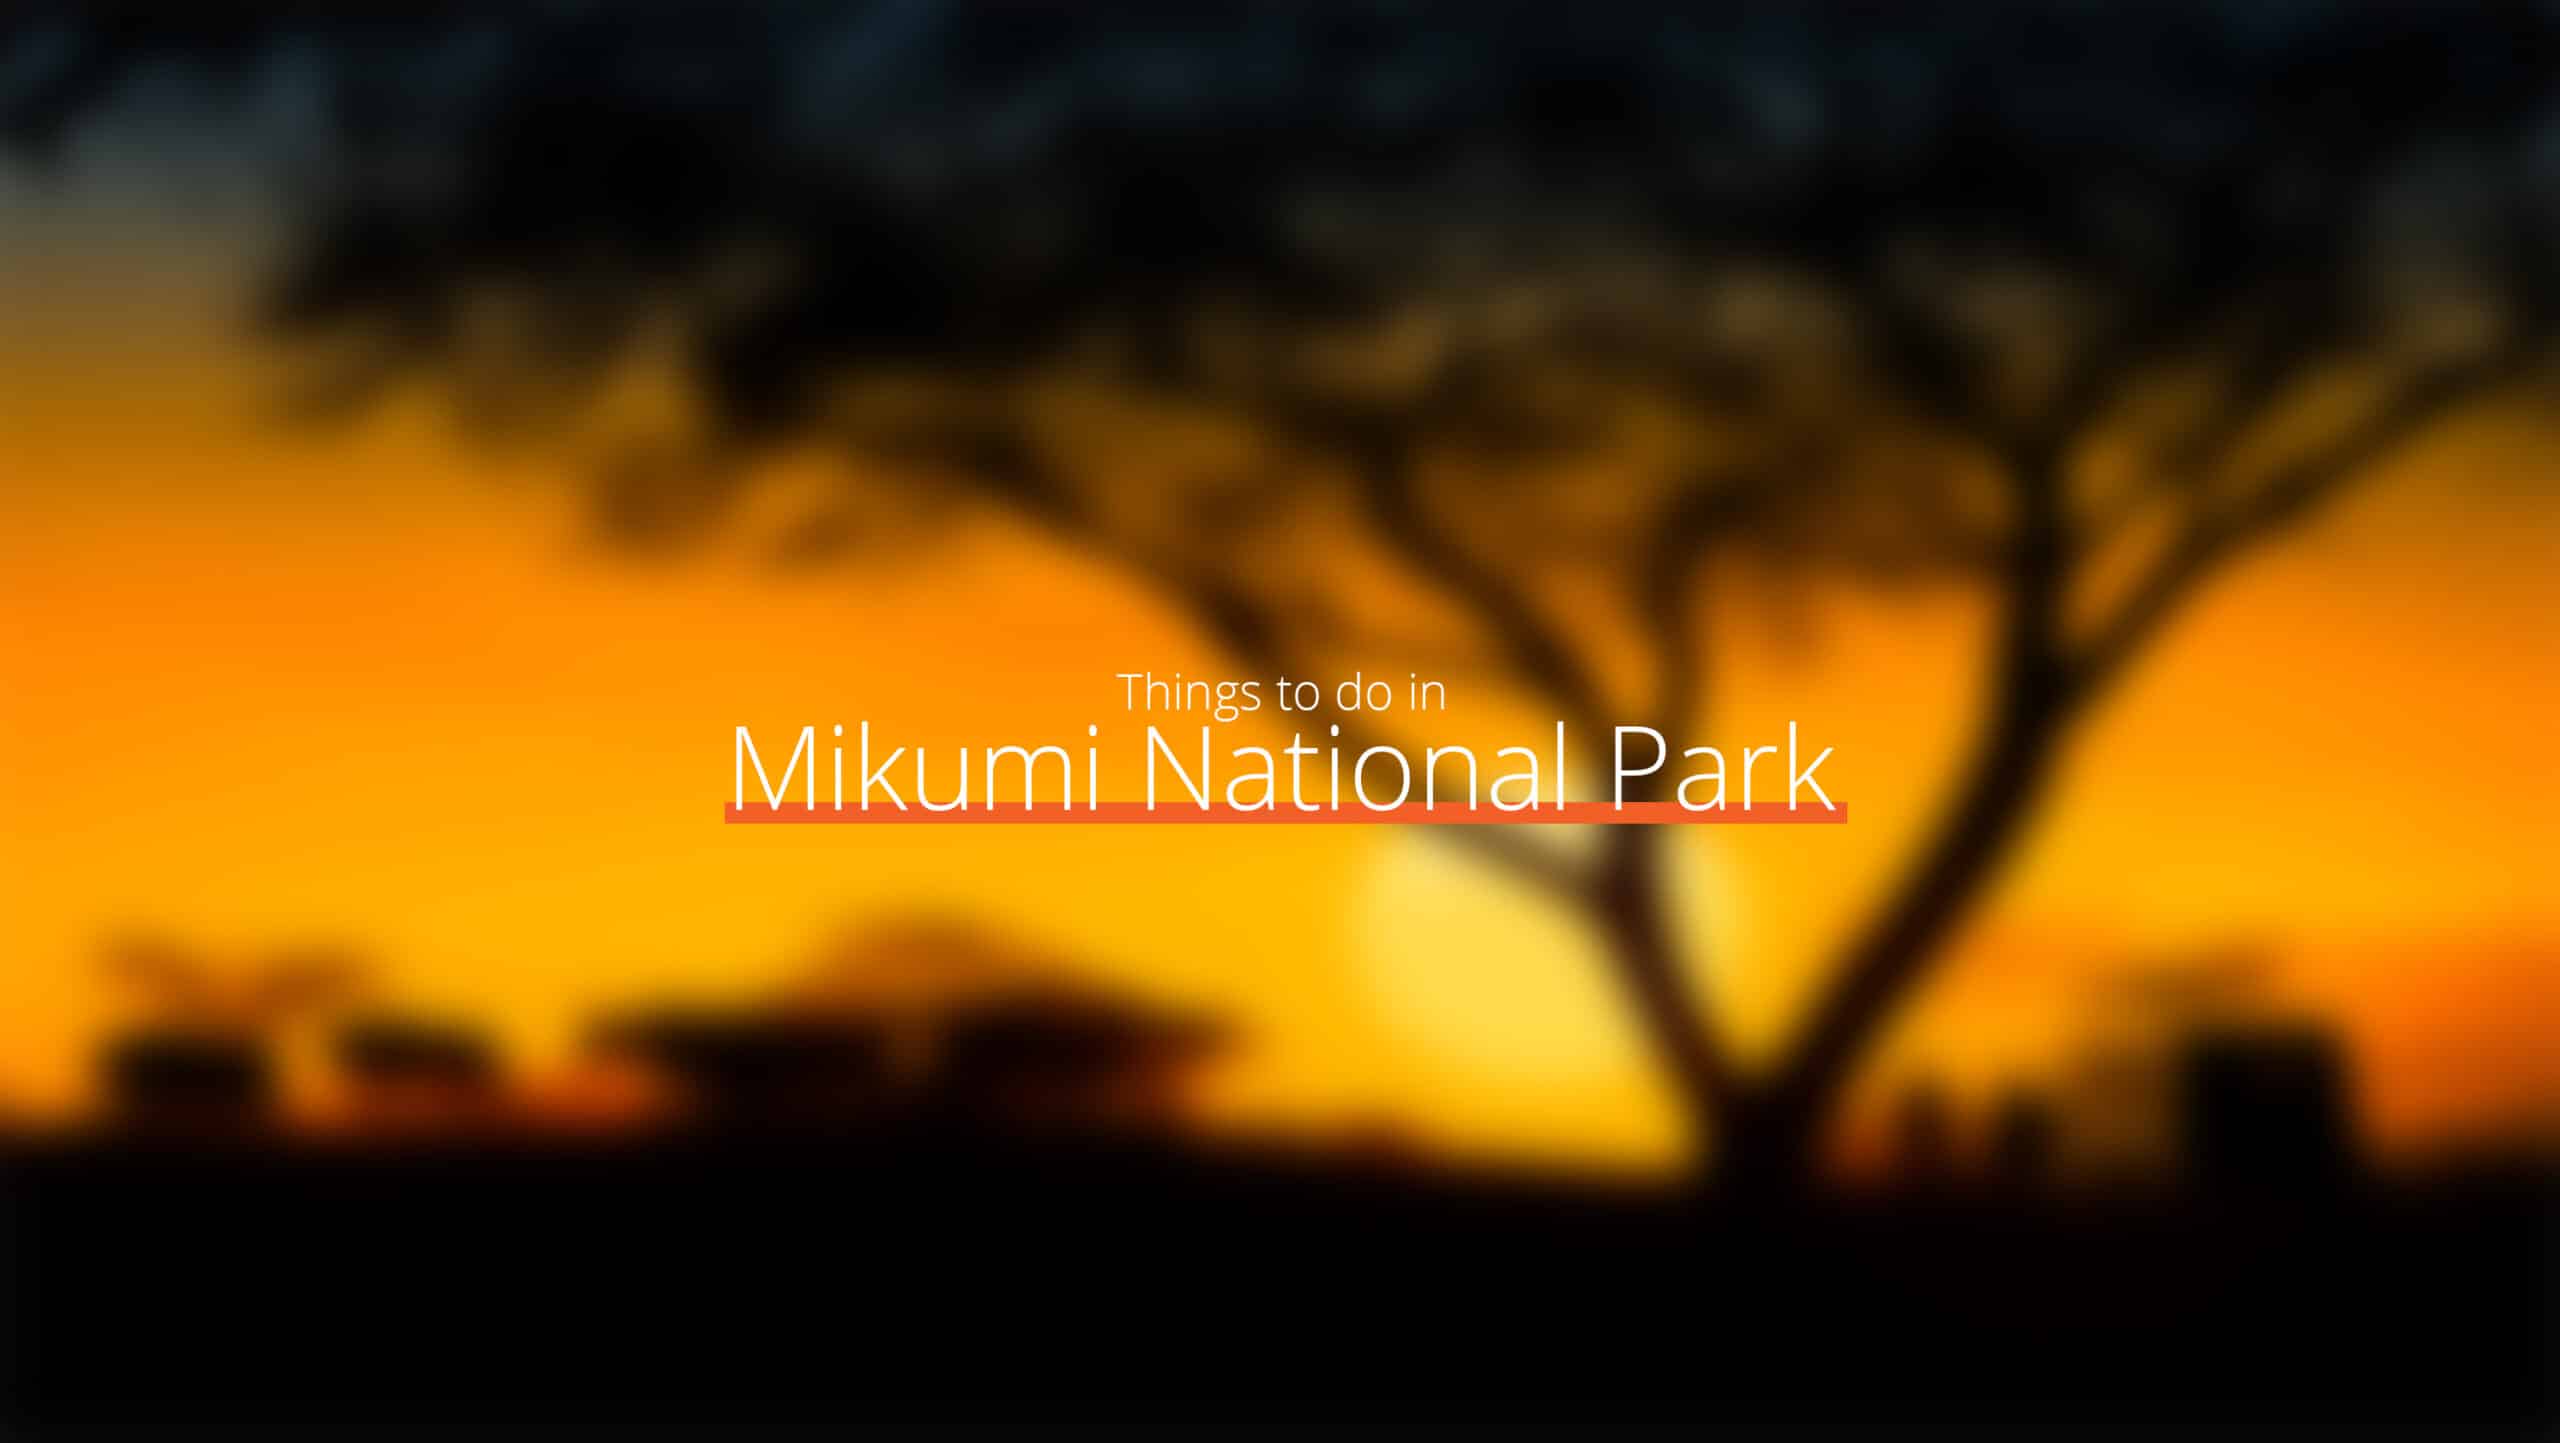 Tanzanie - parc national de mikumi 1 à l'échelle - où aller